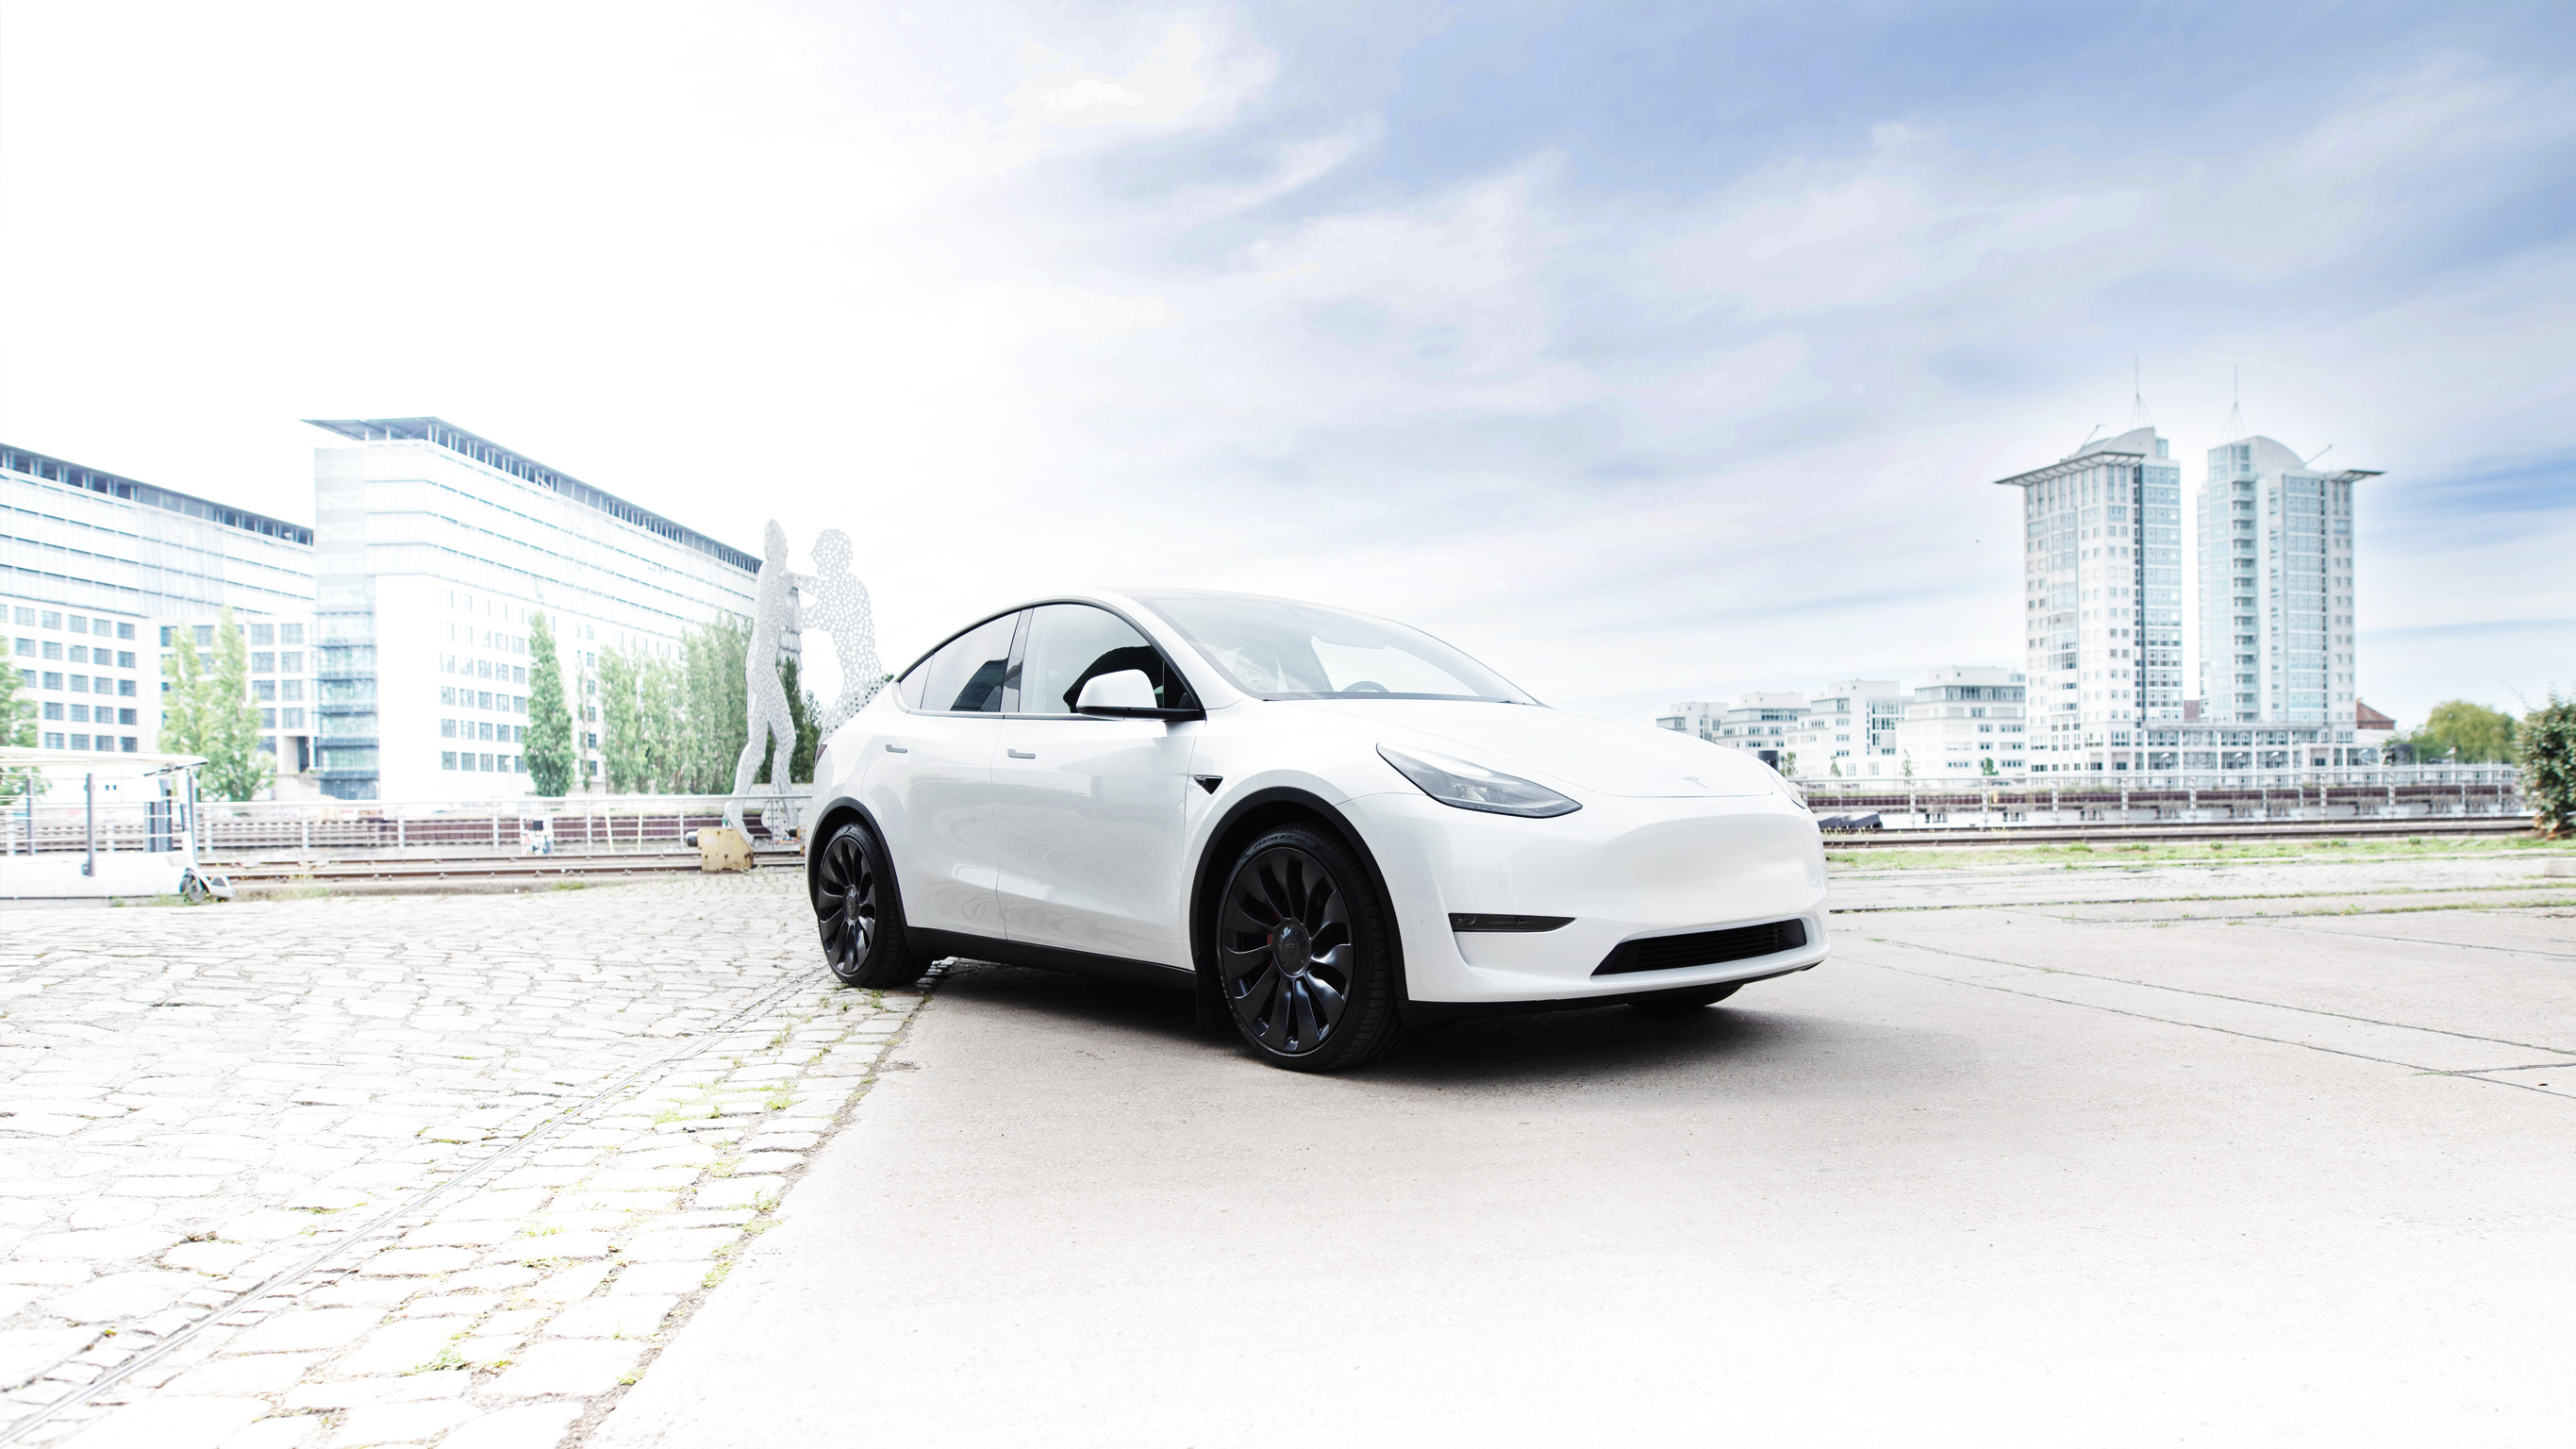 Tesla-Elektroautos zeigen beim Blinken bald Seiten-Bilder